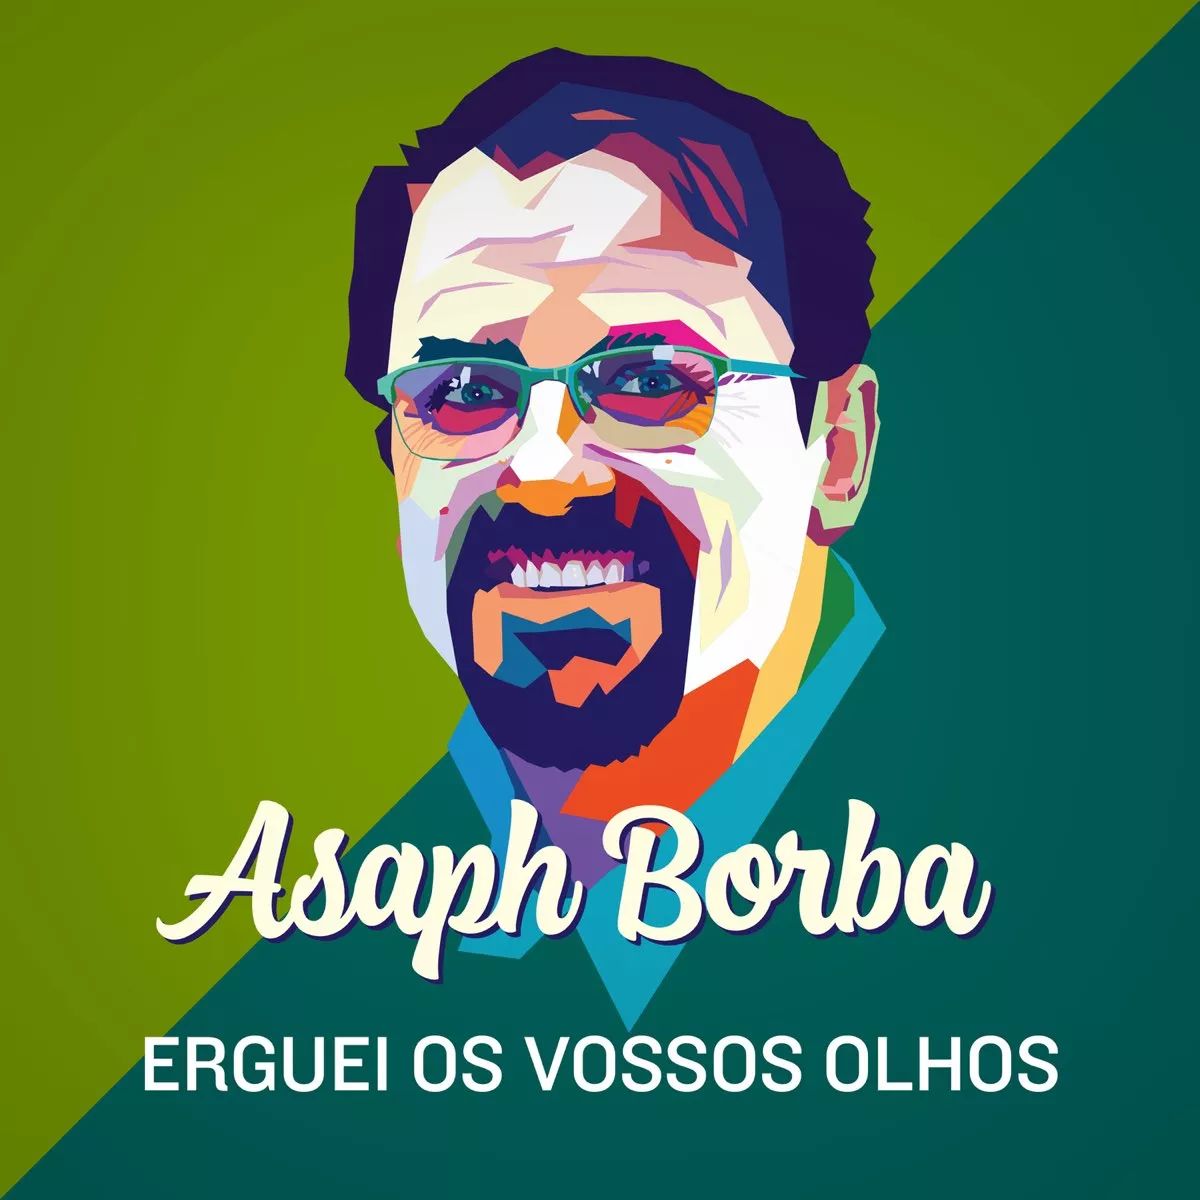 Asaph Borba - Infinitamente Mais (DVD Rastros de Amor) [Vídeo Oficial] 